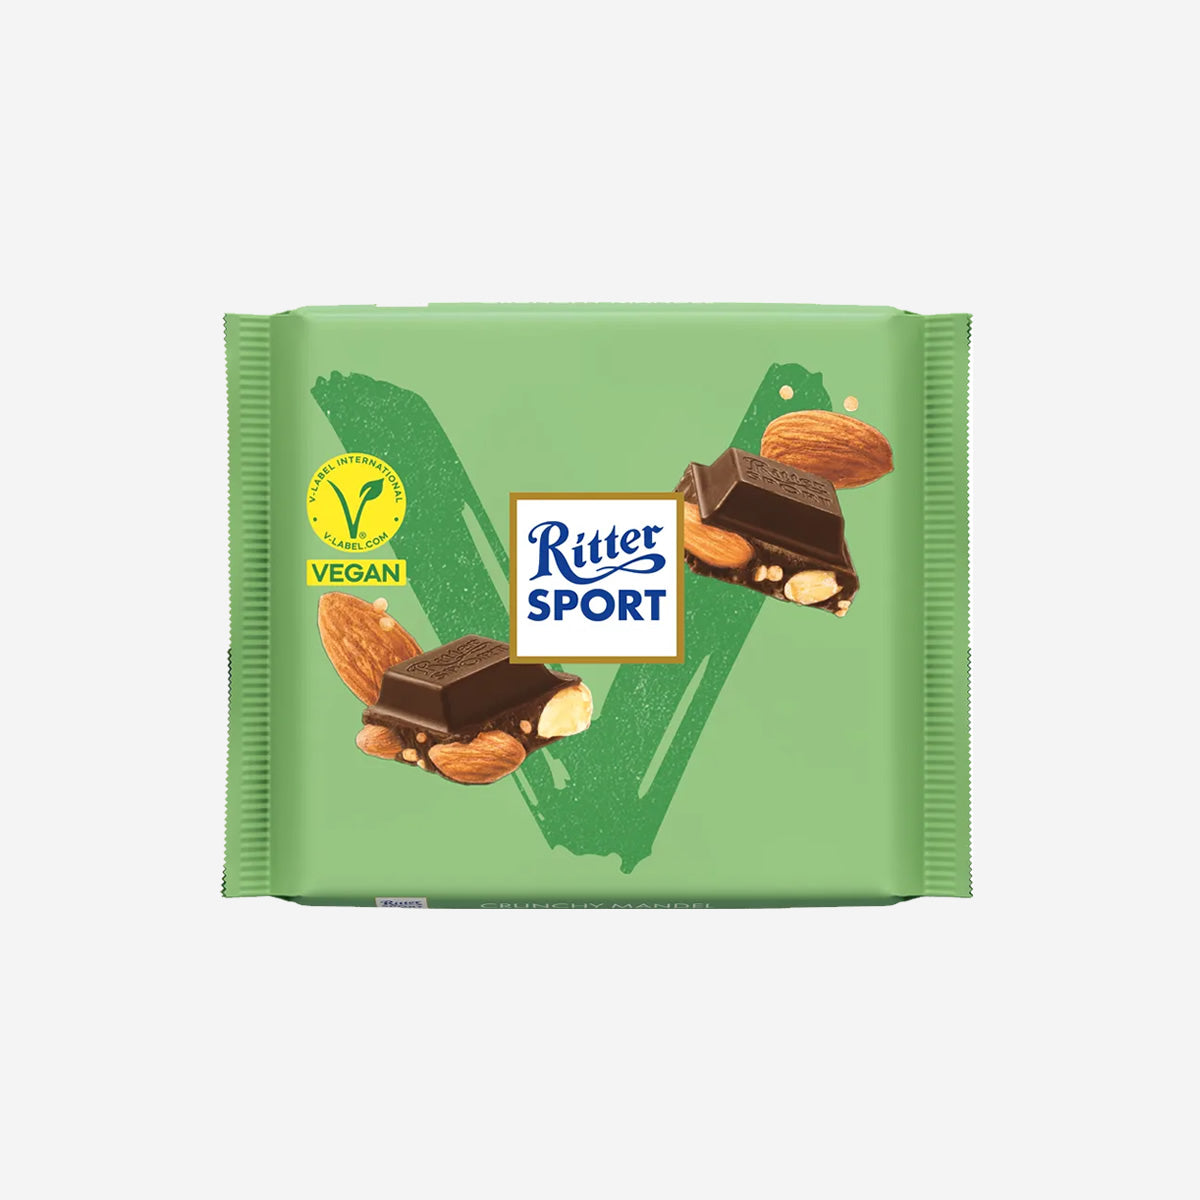 Ritter Sport Vegan Crunchy Almonds